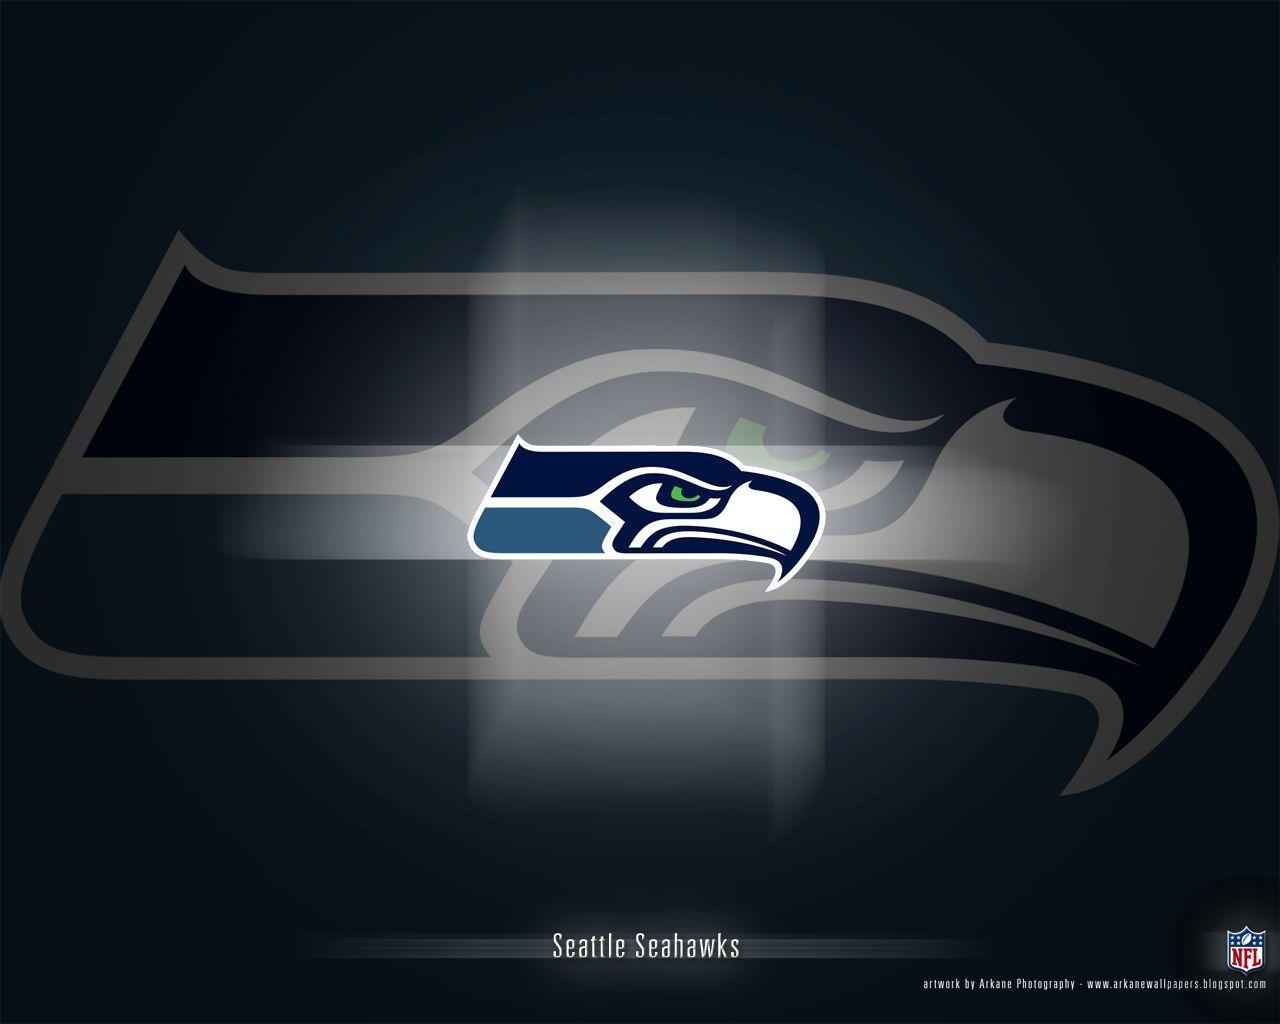 seahawks image. Arkane NFL Wallpaper: Seattle Seahawks. 1